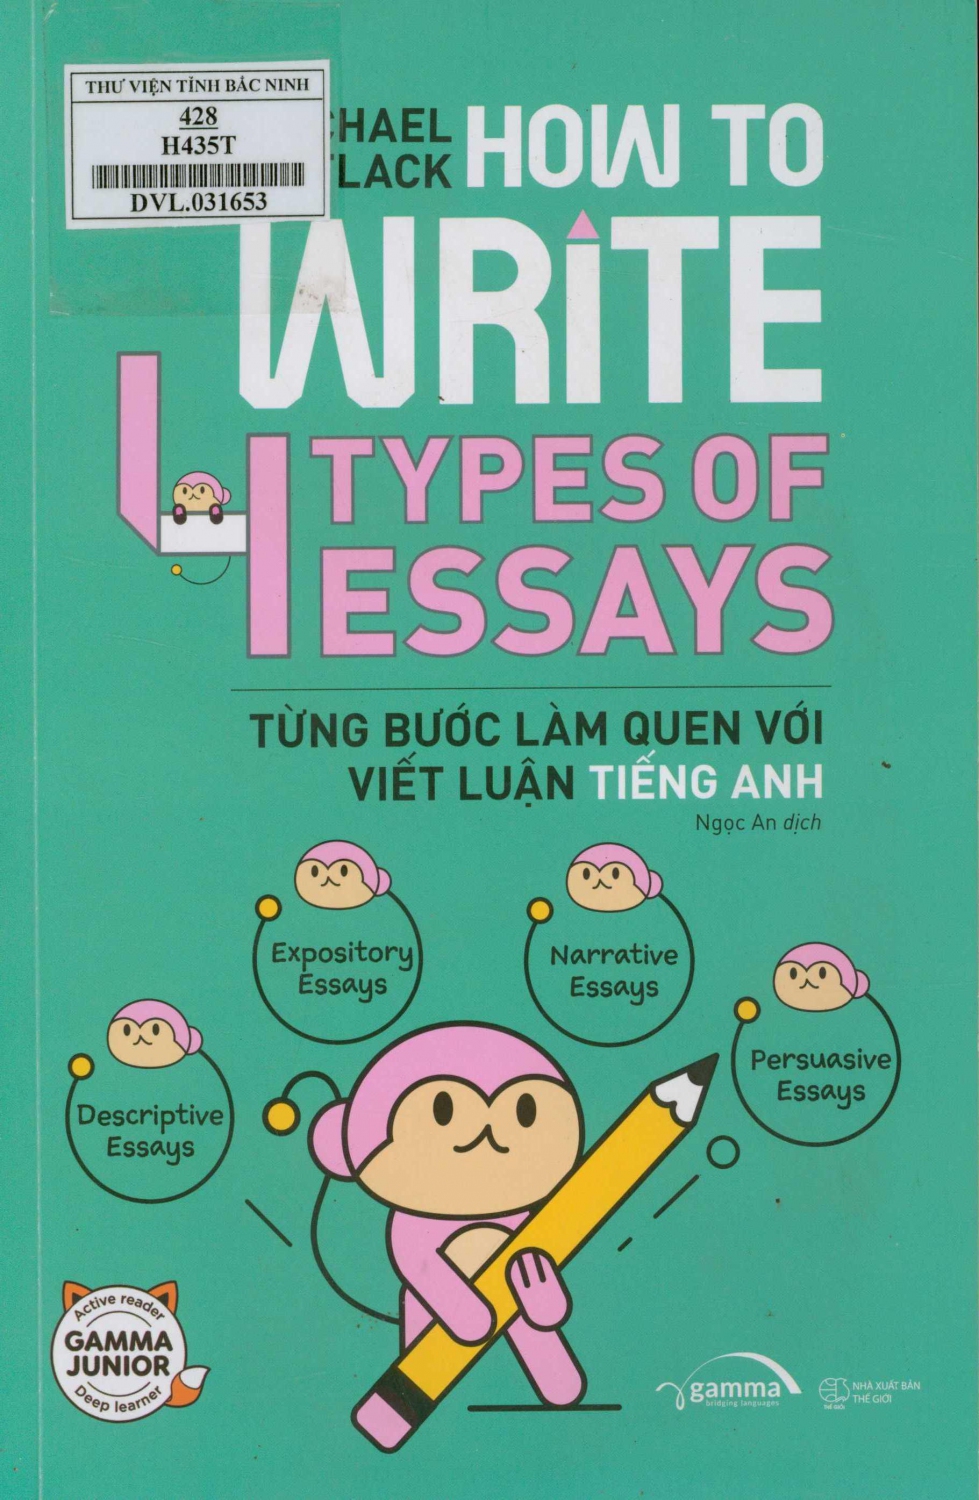 How to write 4 types of essays : Từng bước làm quen với viết luận tiếng Anh